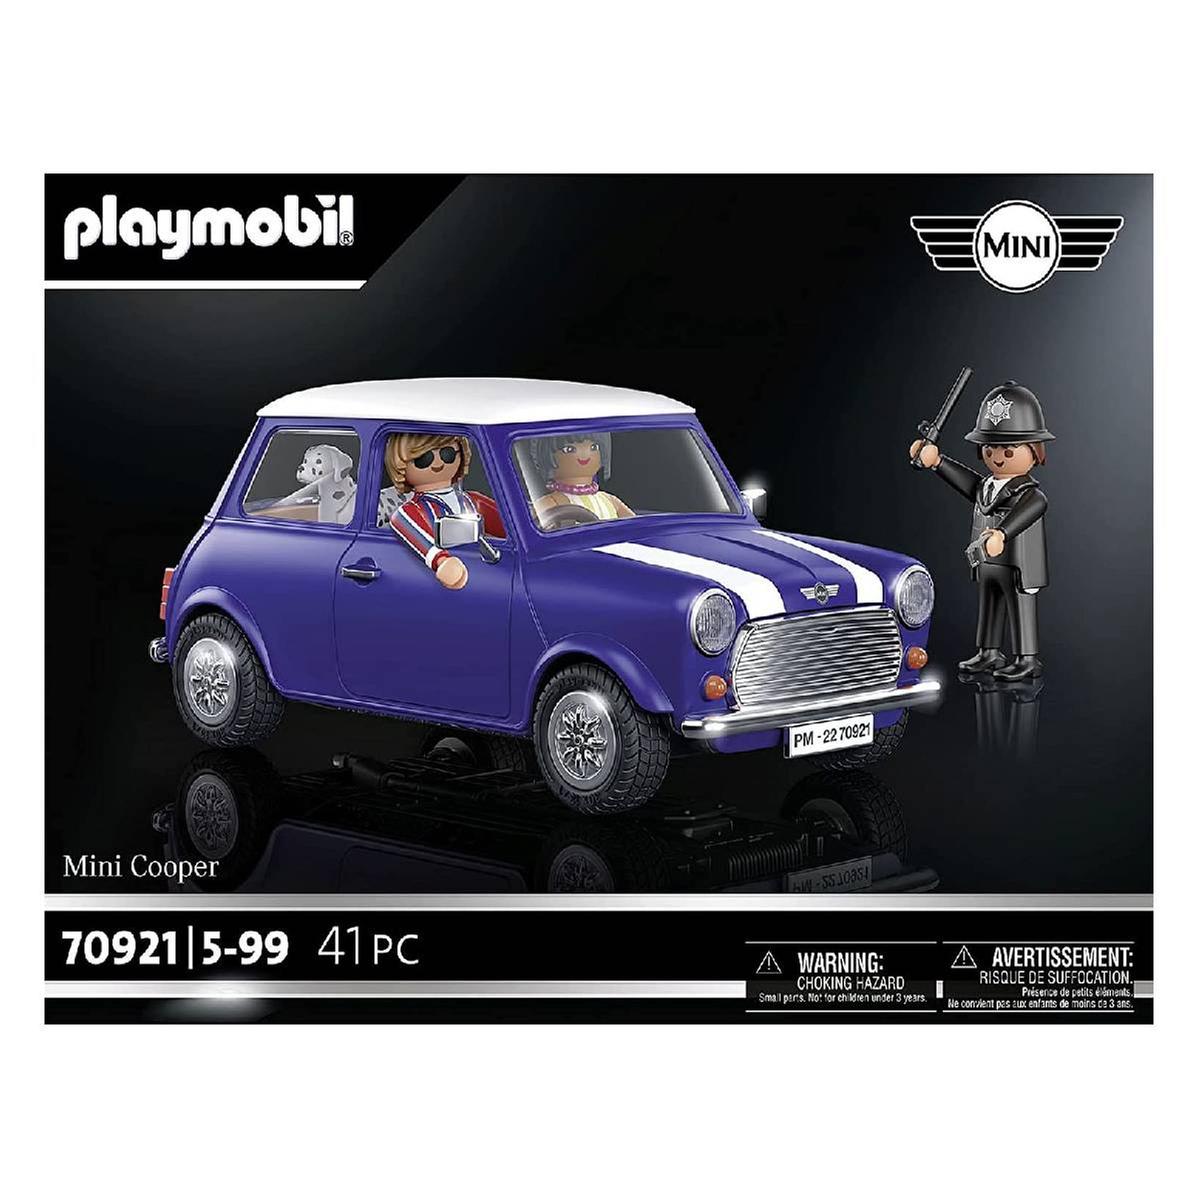 Playmobil - Mini Cooper - 70921 | Miscellaneous | Toys"R"Us España